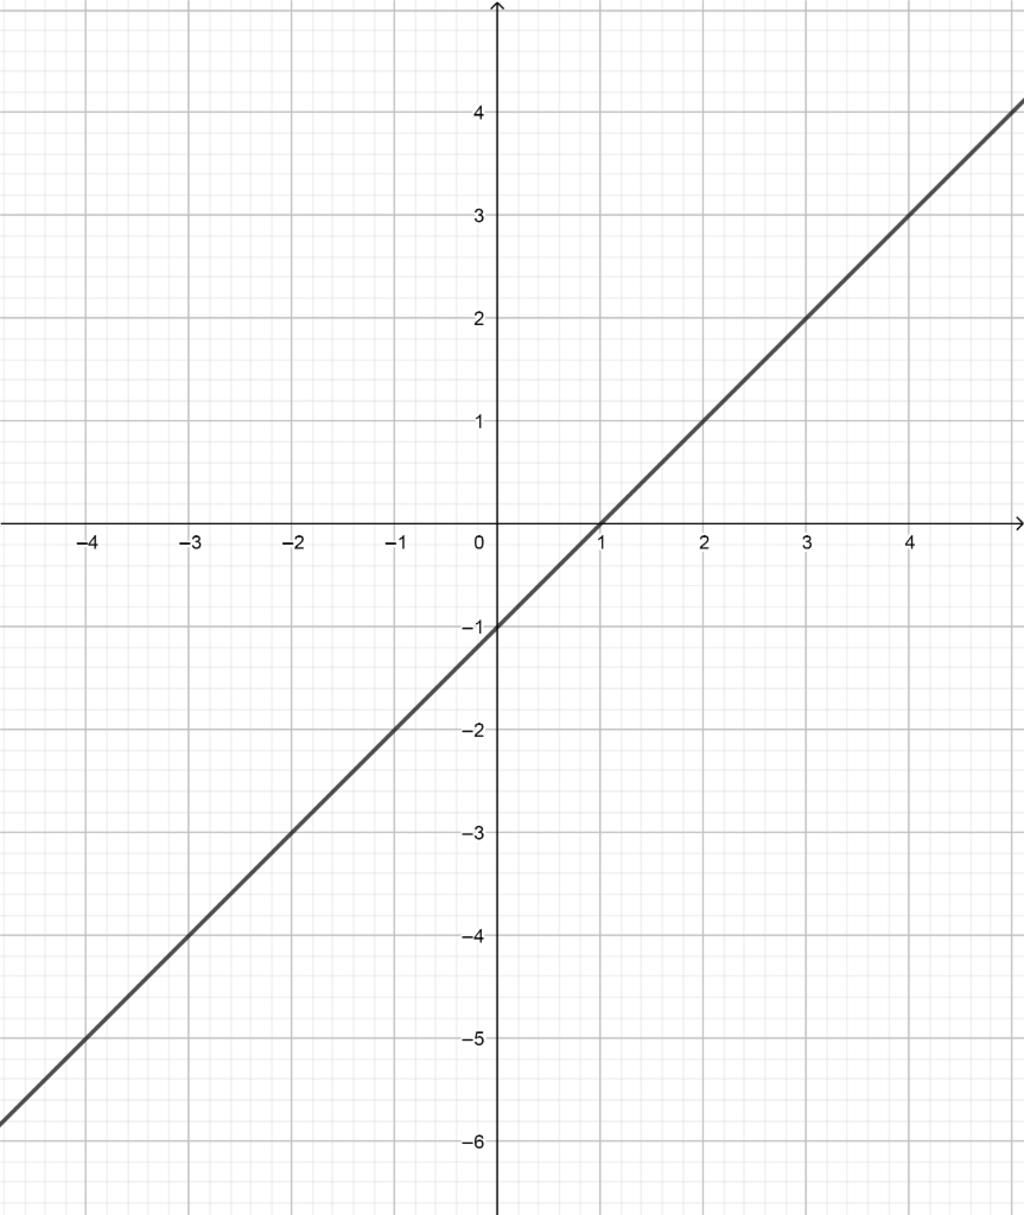 Hãy xem bức tranh của đồ thị hàm số y=x-1! Nhìn vào những đường cong tuyệt đẹp và sắc nét trên bức tranh, bạn sẽ nhận ra rằng đây là một hàm số đặc biệt và quan trọng trong toán học. Bạn có muốn hiểu thêm về đồ thị hàm số hay không? Hãy cùng xem bức tranh này để khám phá thêm nhé!